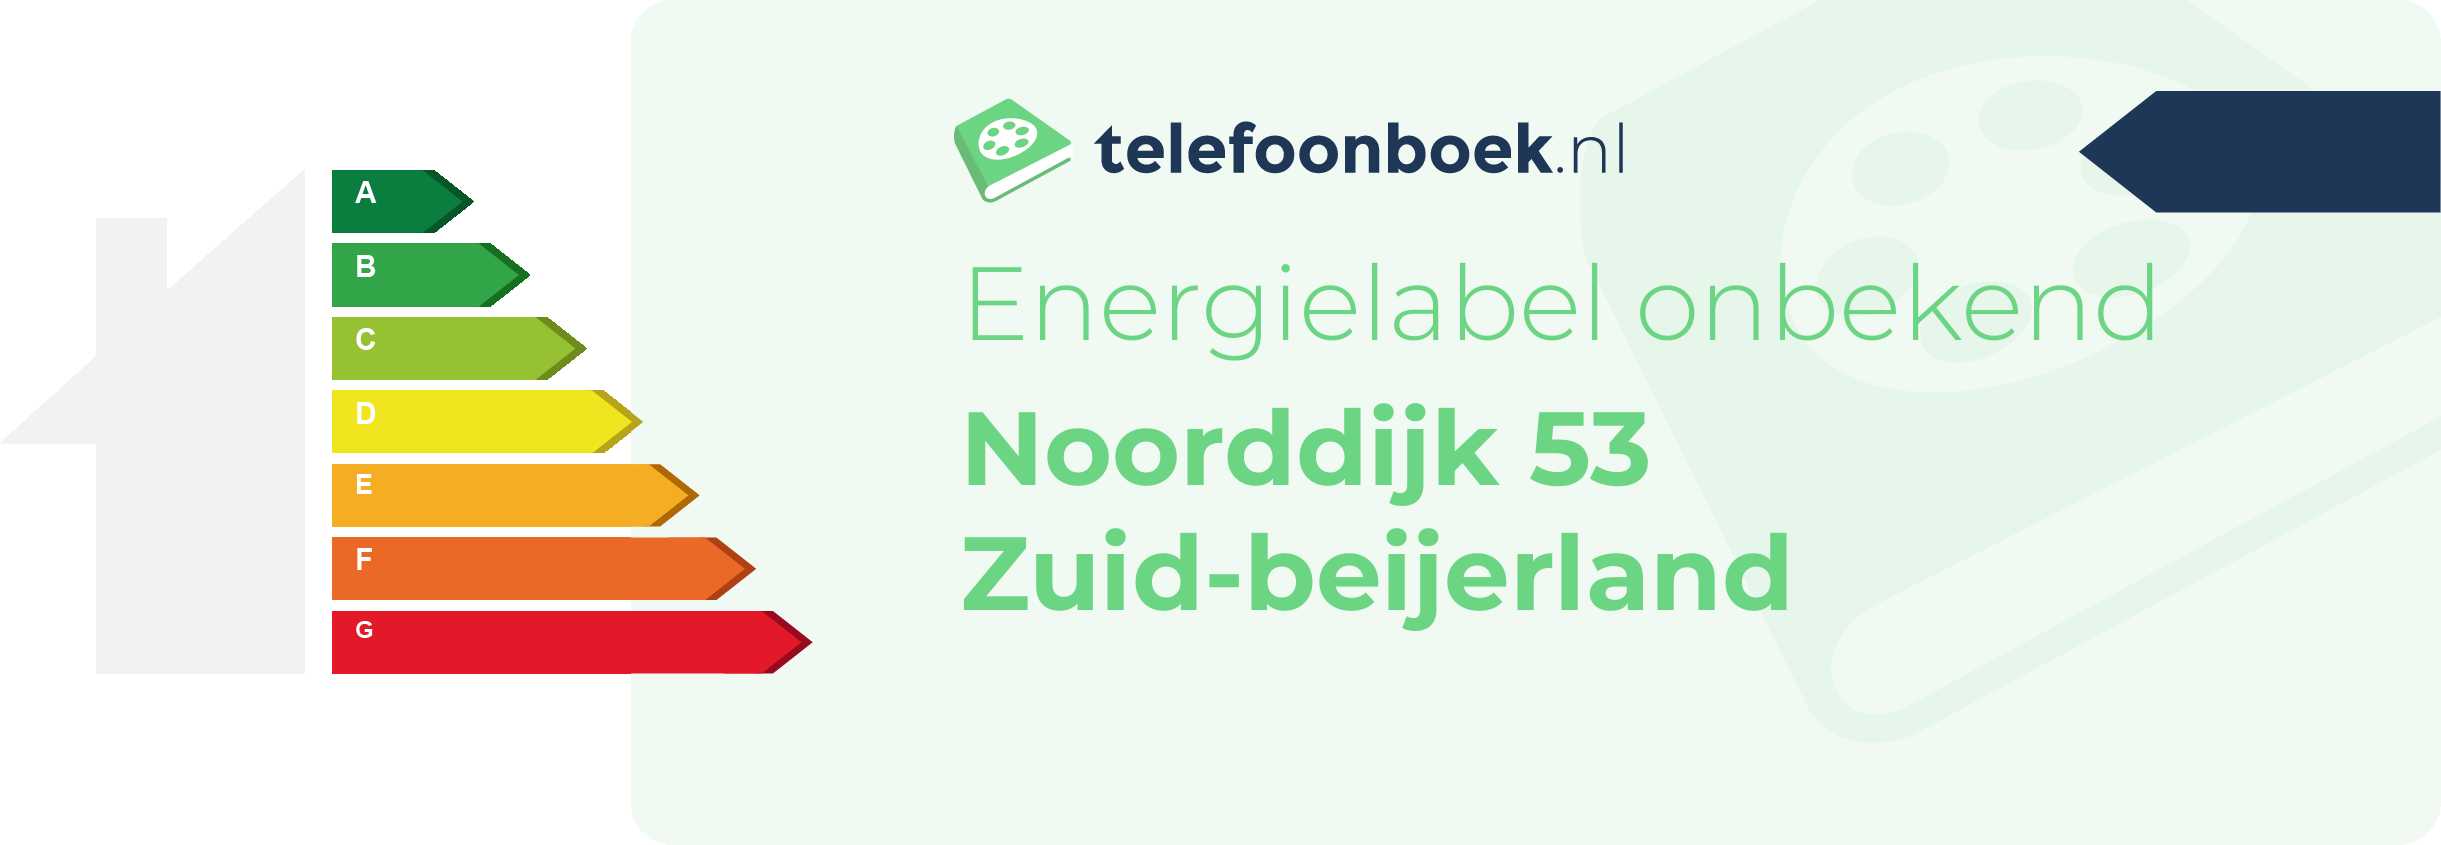 Energielabel Noorddijk 53 Zuid-Beijerland